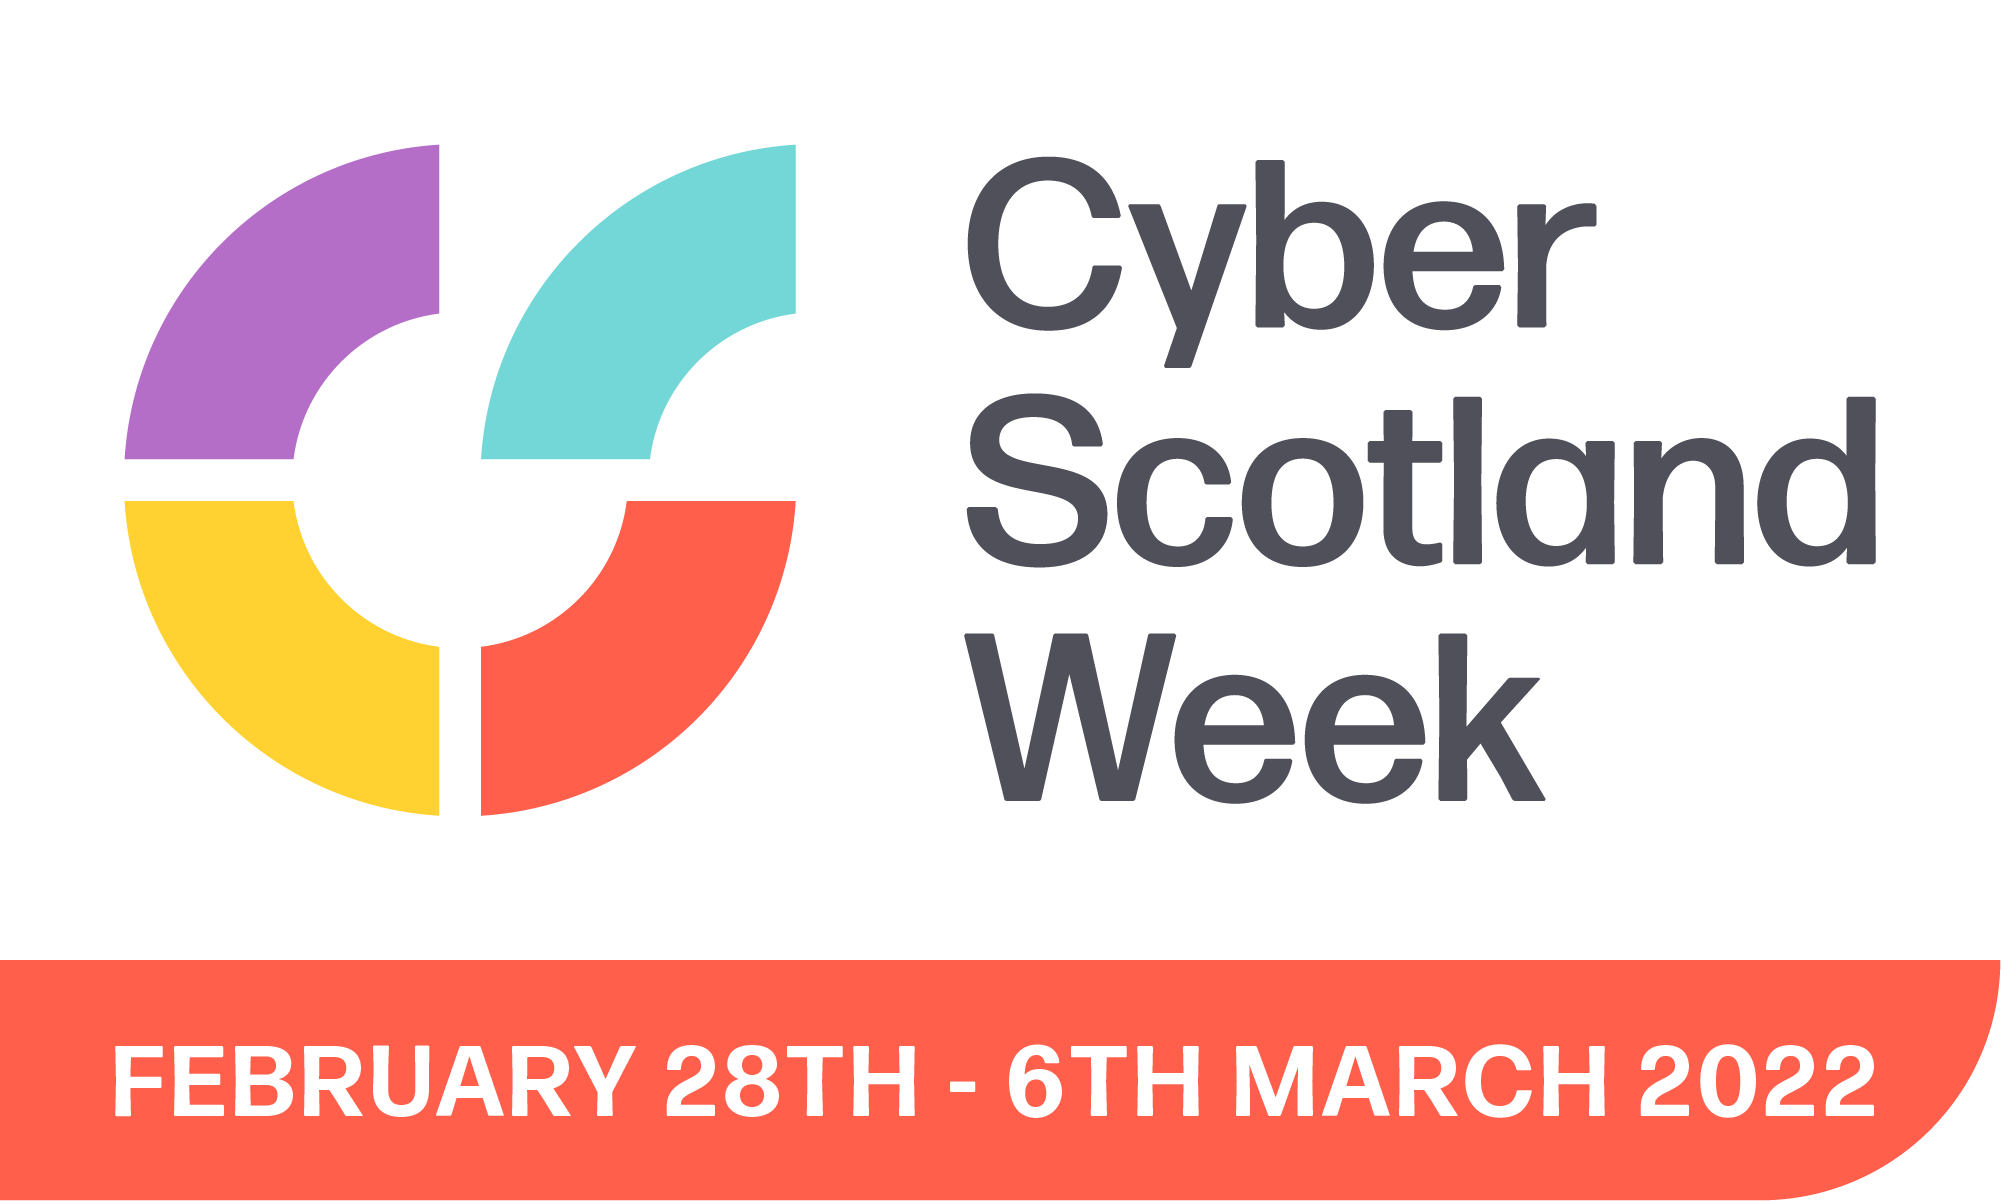 Cyber Scotland Week February 28th - 6th March 2022